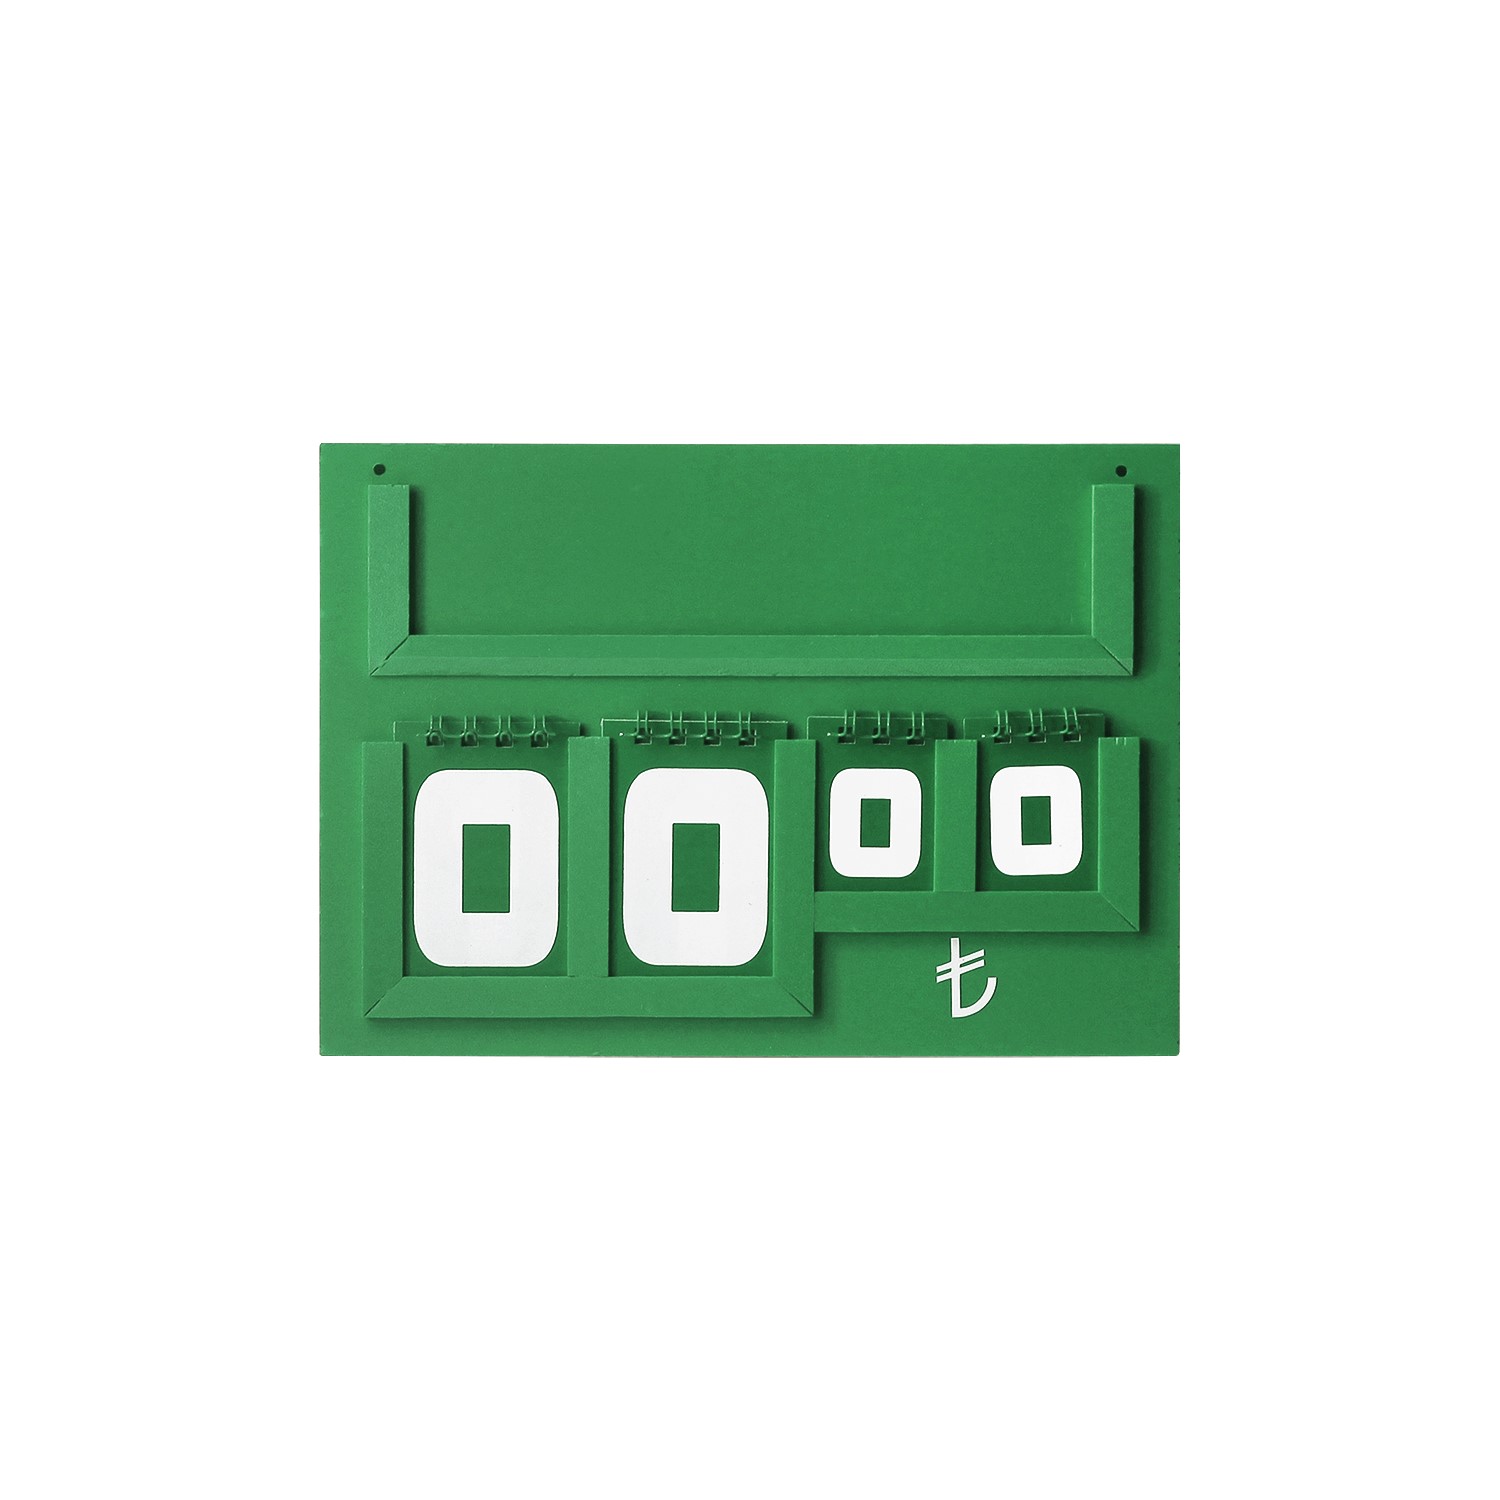 Yazılı Manav Etiketi Maxi Çift Taraflı 15x21 cm Yeşil -1.jpg (131 KB)